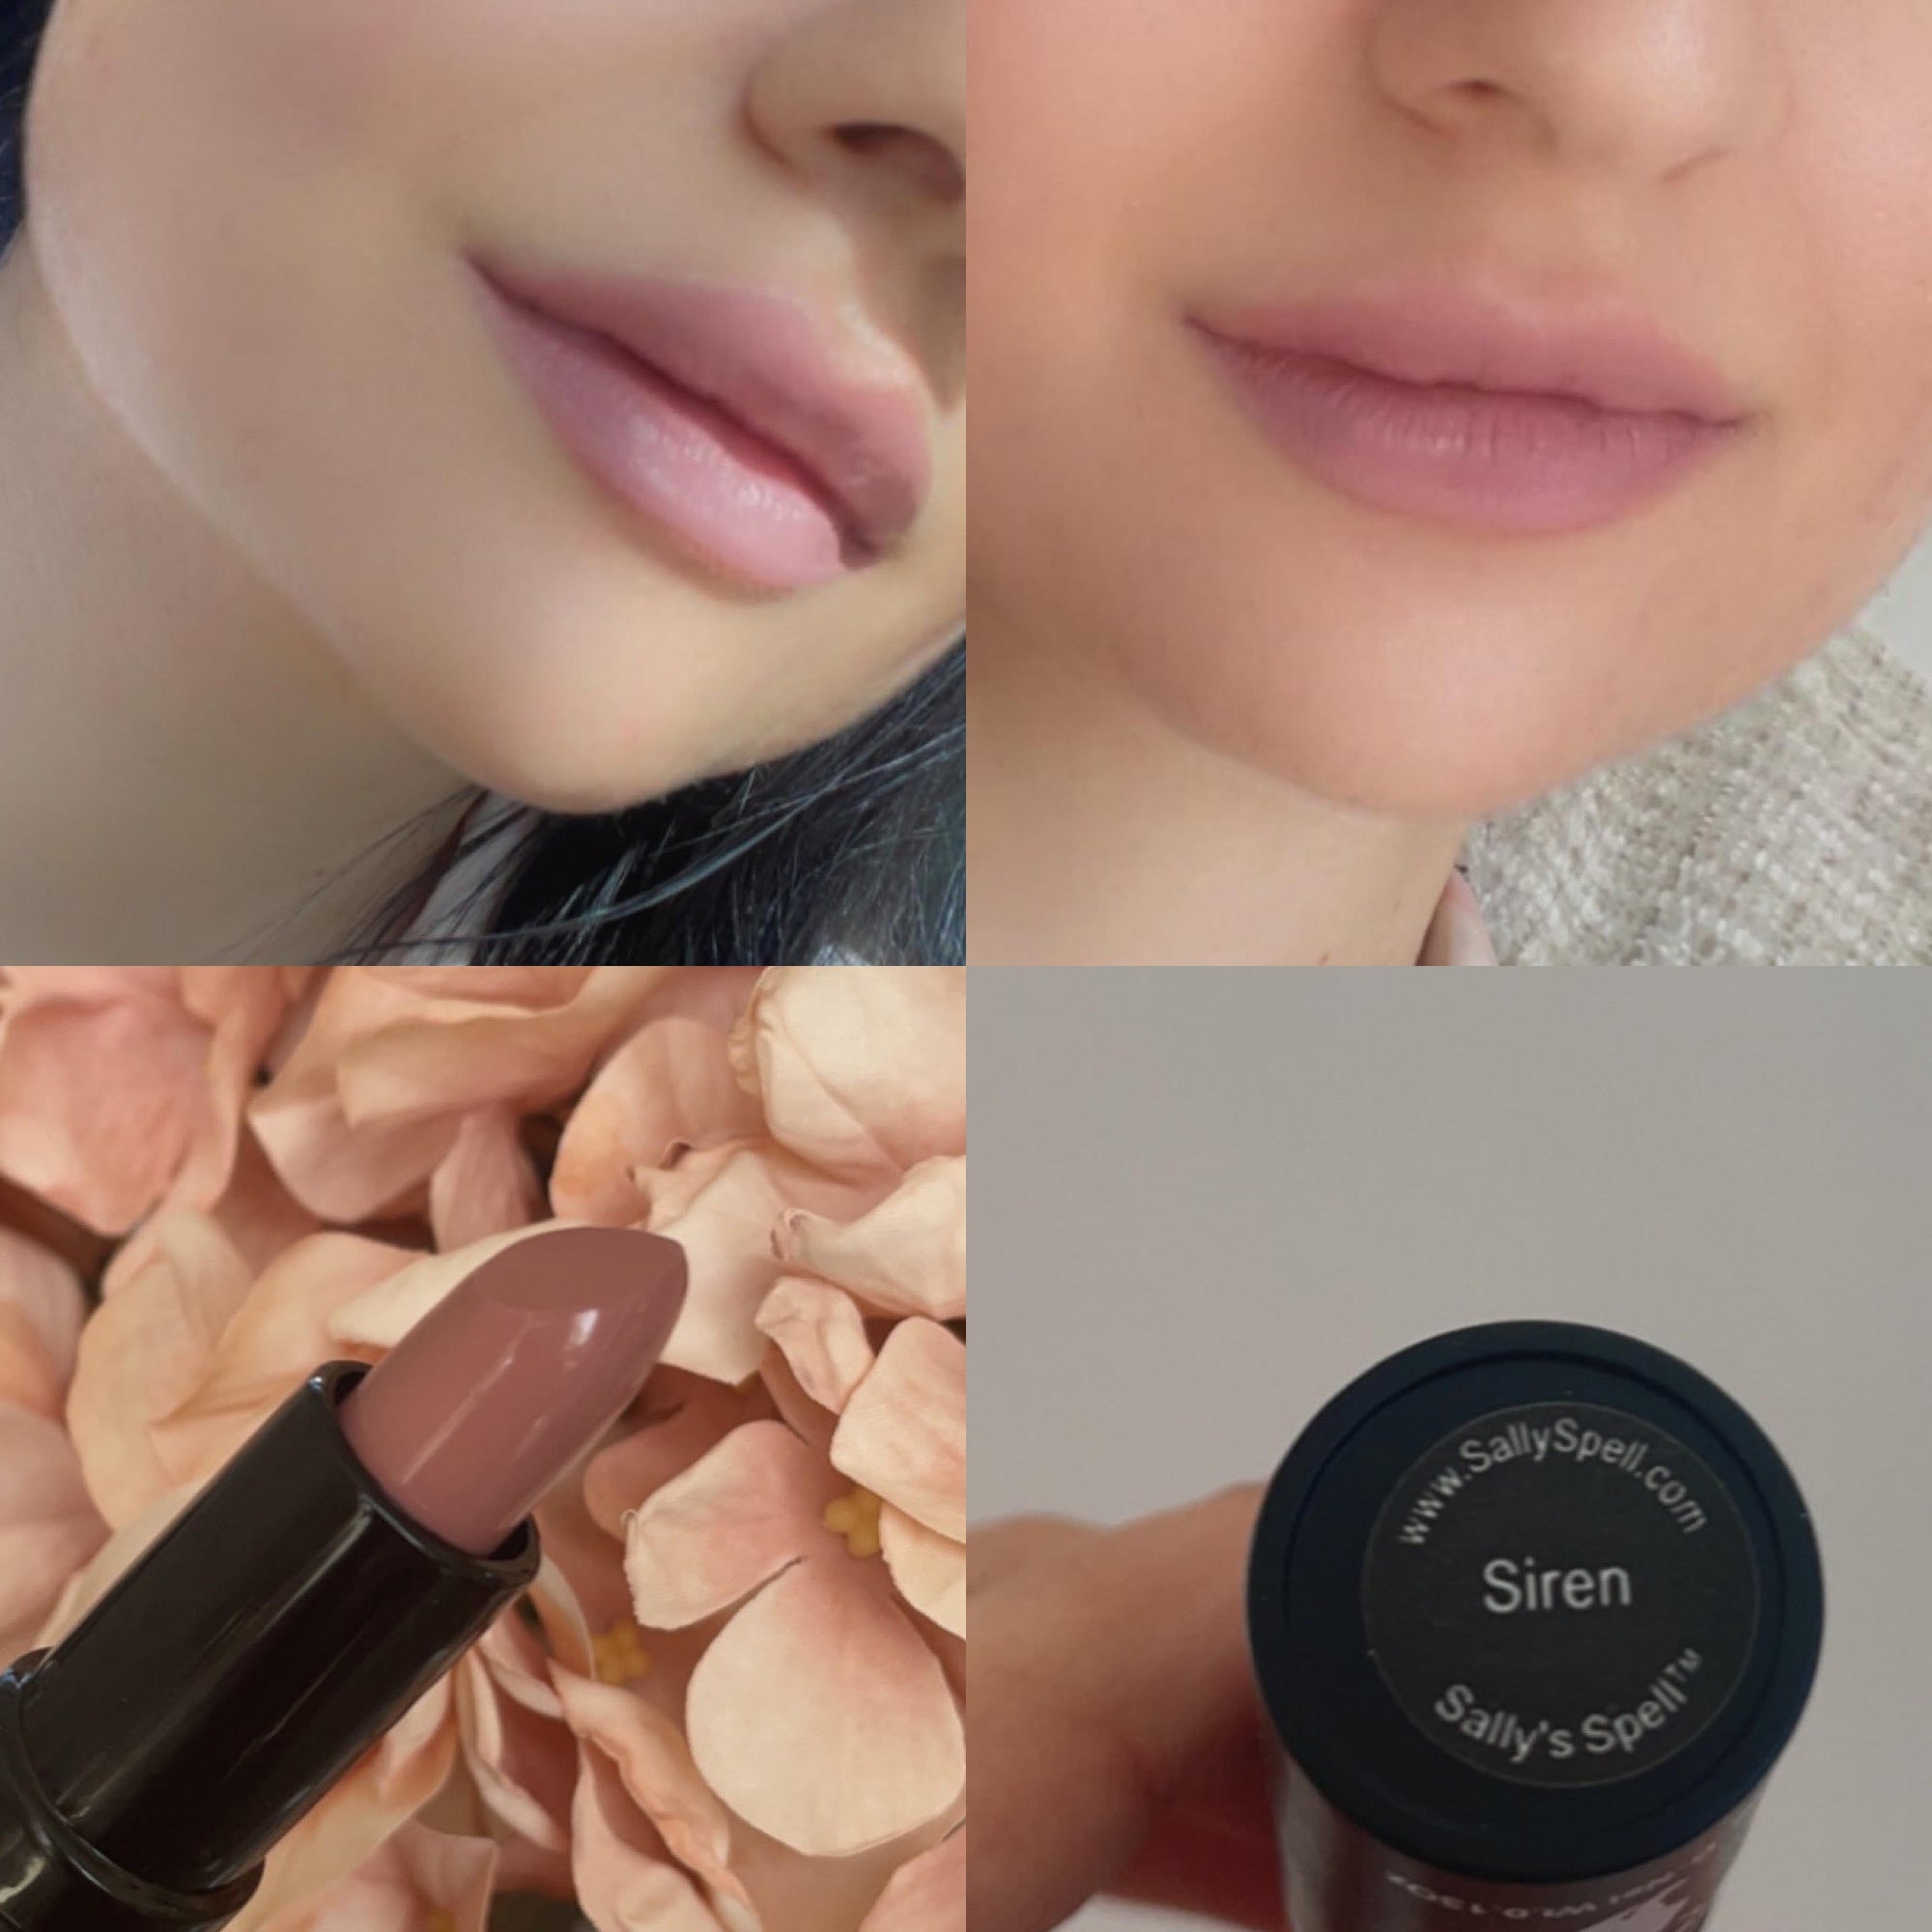 Sally's Spell Velvet Matte Lipstick - Siren